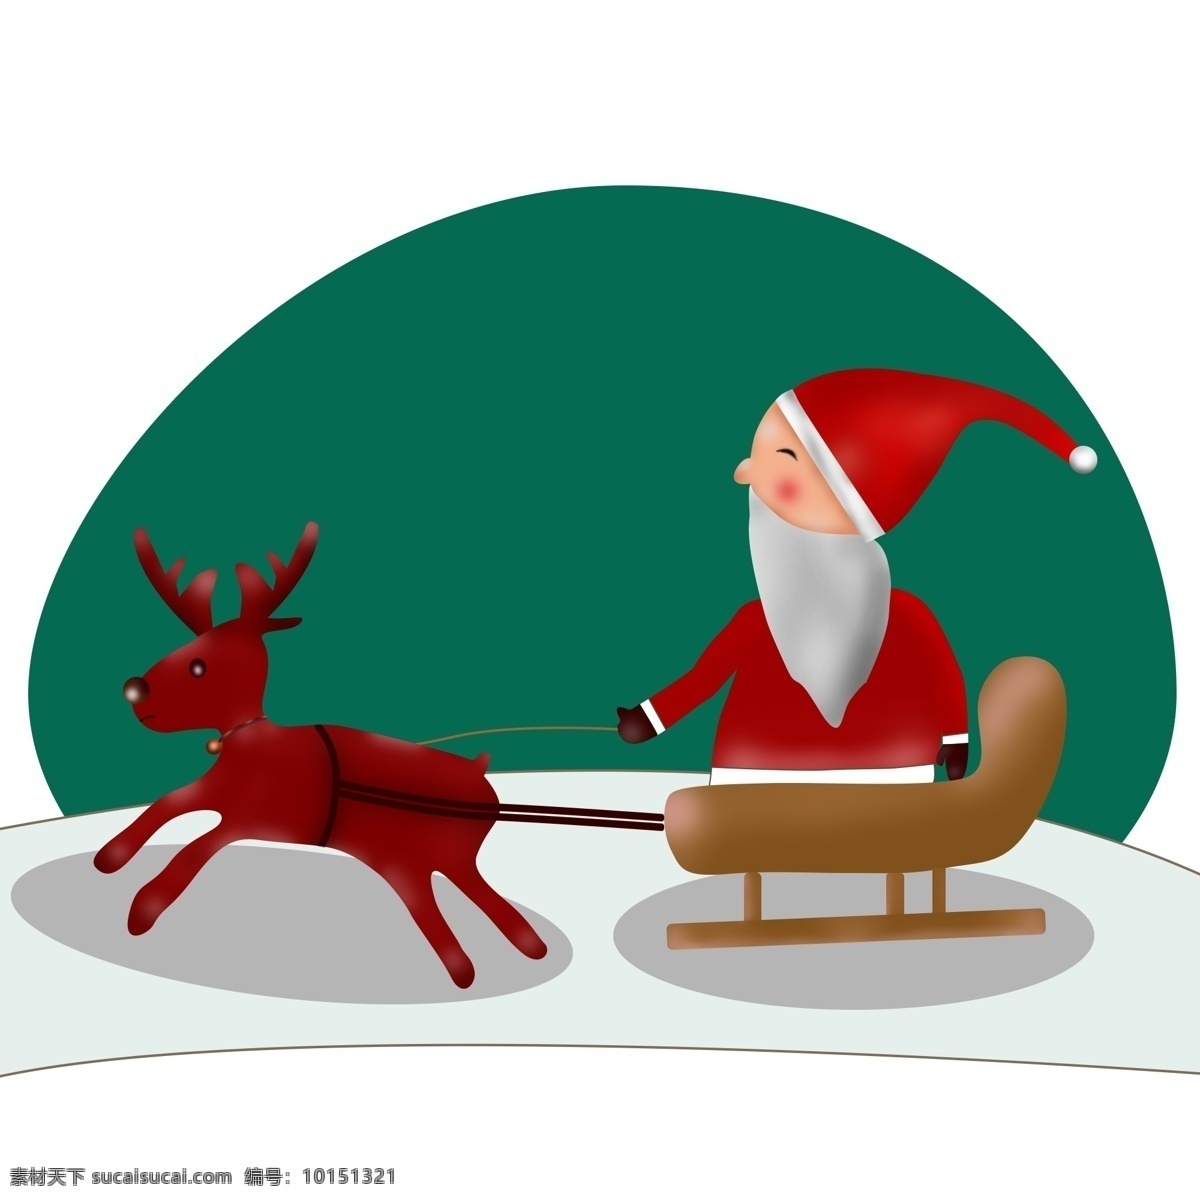 卡通 手绘 圣诞老人 雪橇 驯鹿 圣诞 老爷爷 礼物 圣诞节 2018 平安夜 送礼物 新年快乐 节日气氛